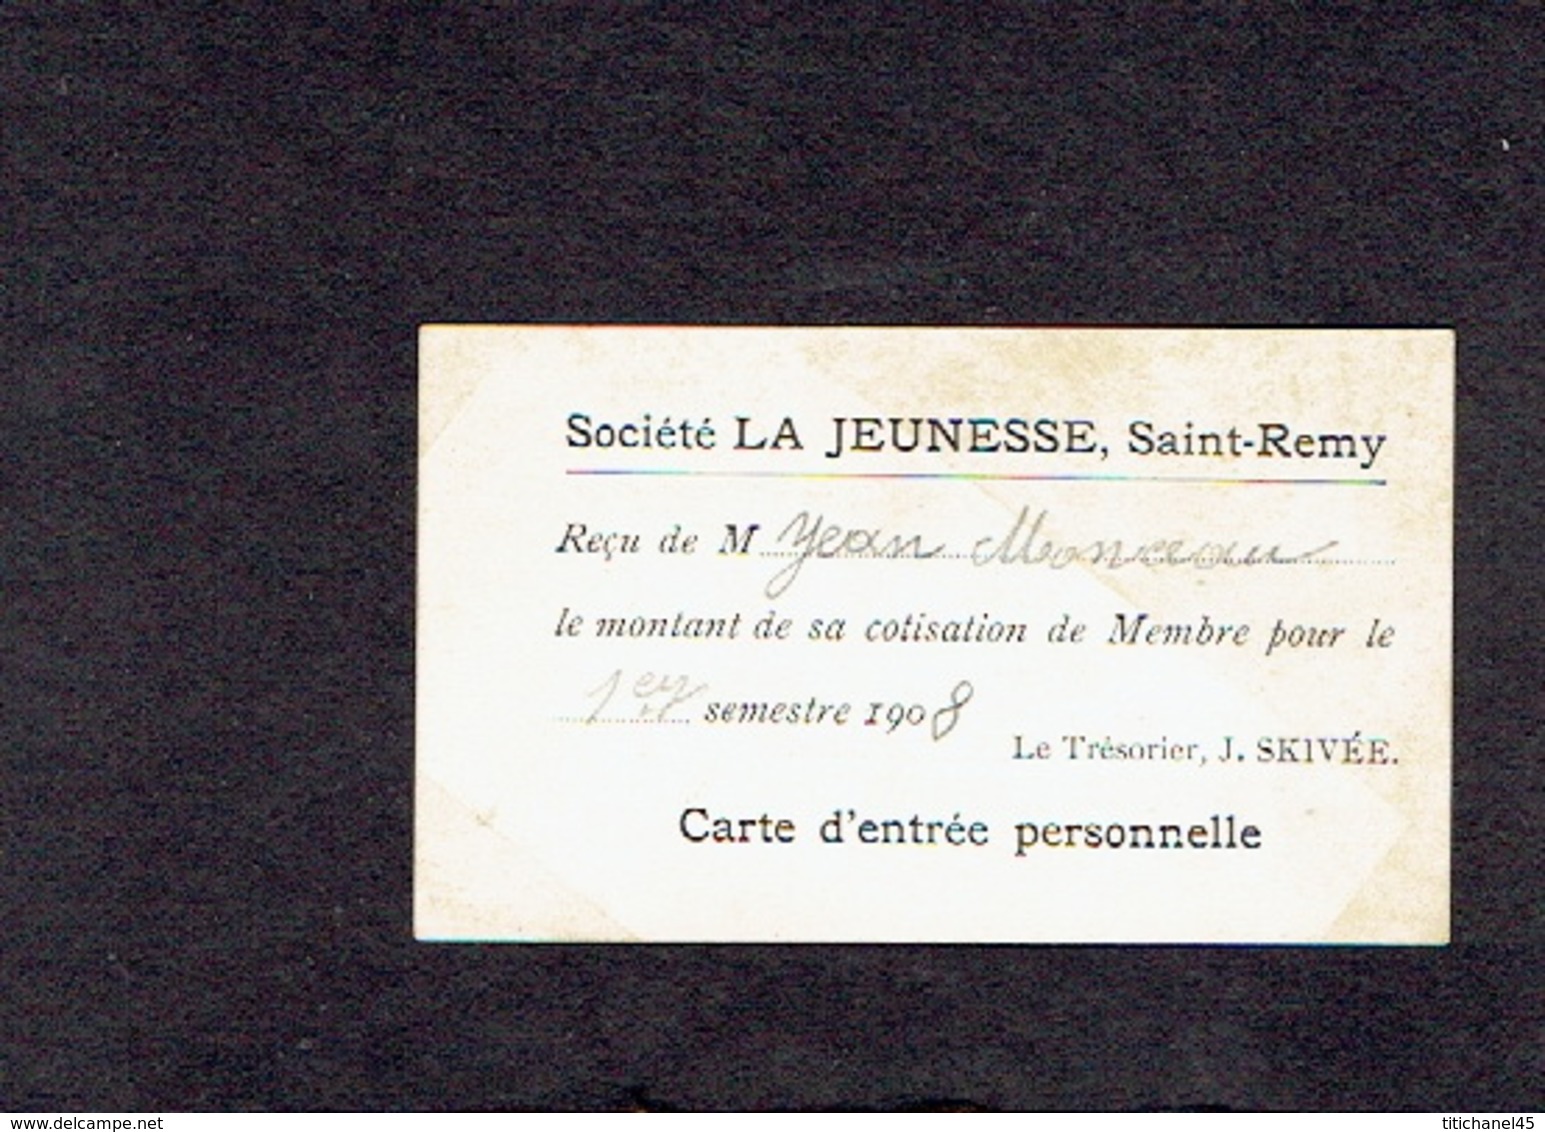 SAINT-REMY - Carte De Membre De 1908 De La Société LA JEUNESSE, SAINT-REMY - Reçu Le Montant Cotisation 1er Sem. 1908 - Mitgliedskarten